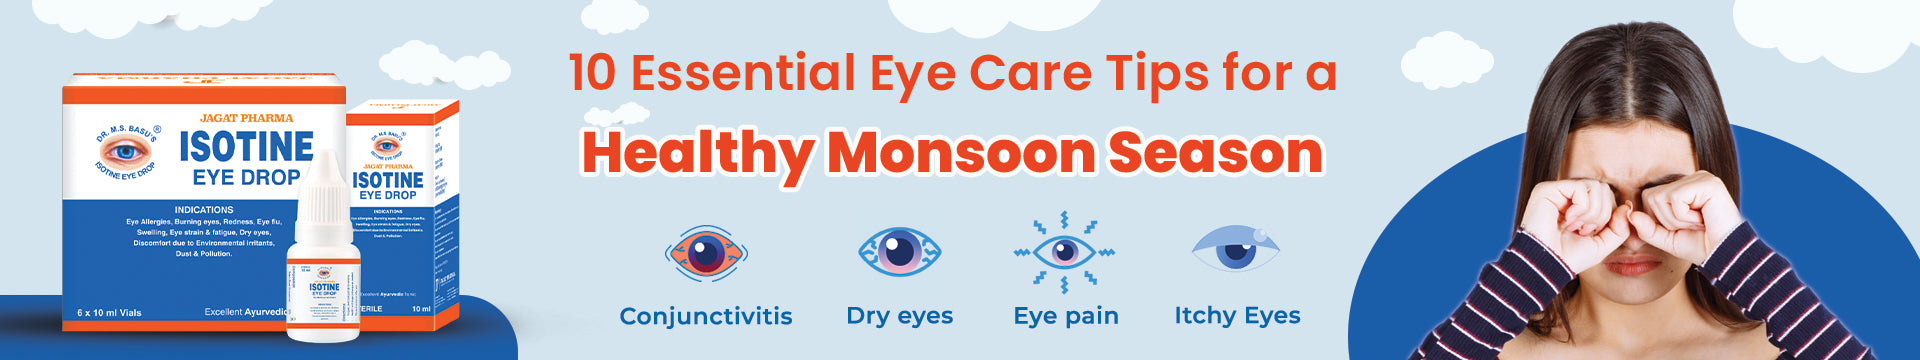 Eye Care Tips for a Monsoon Season